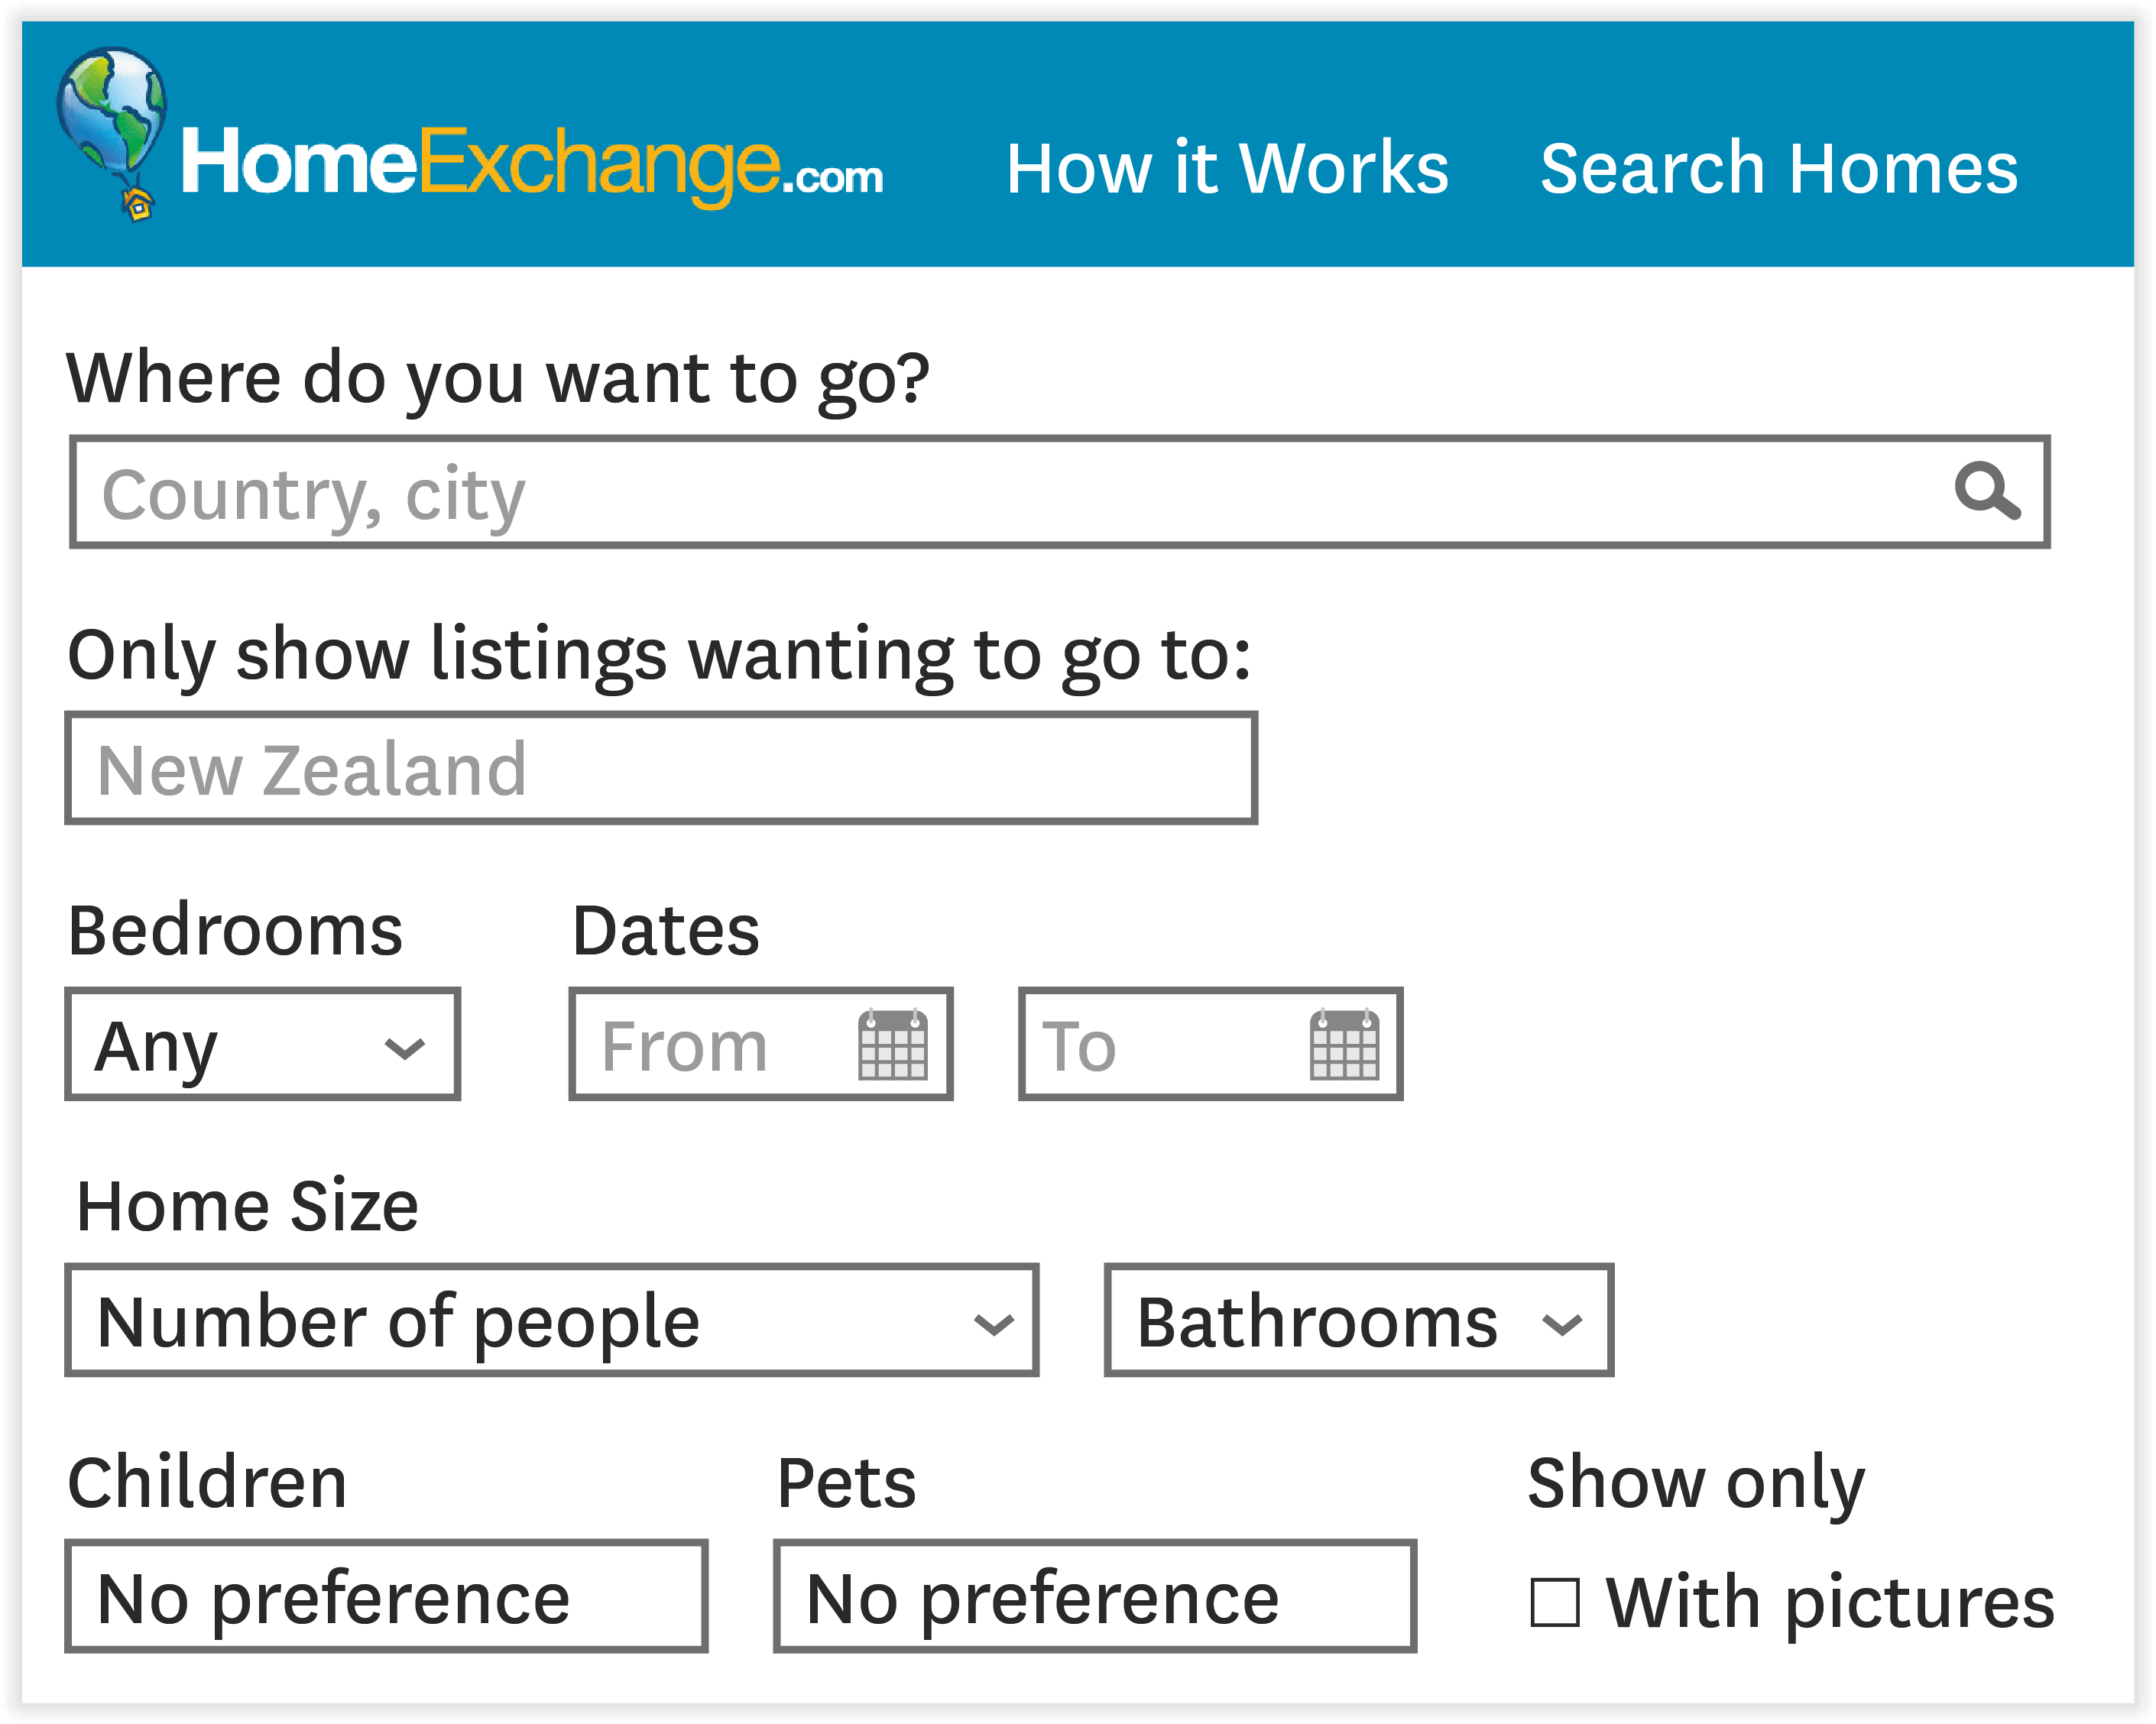 HomeExchange.com